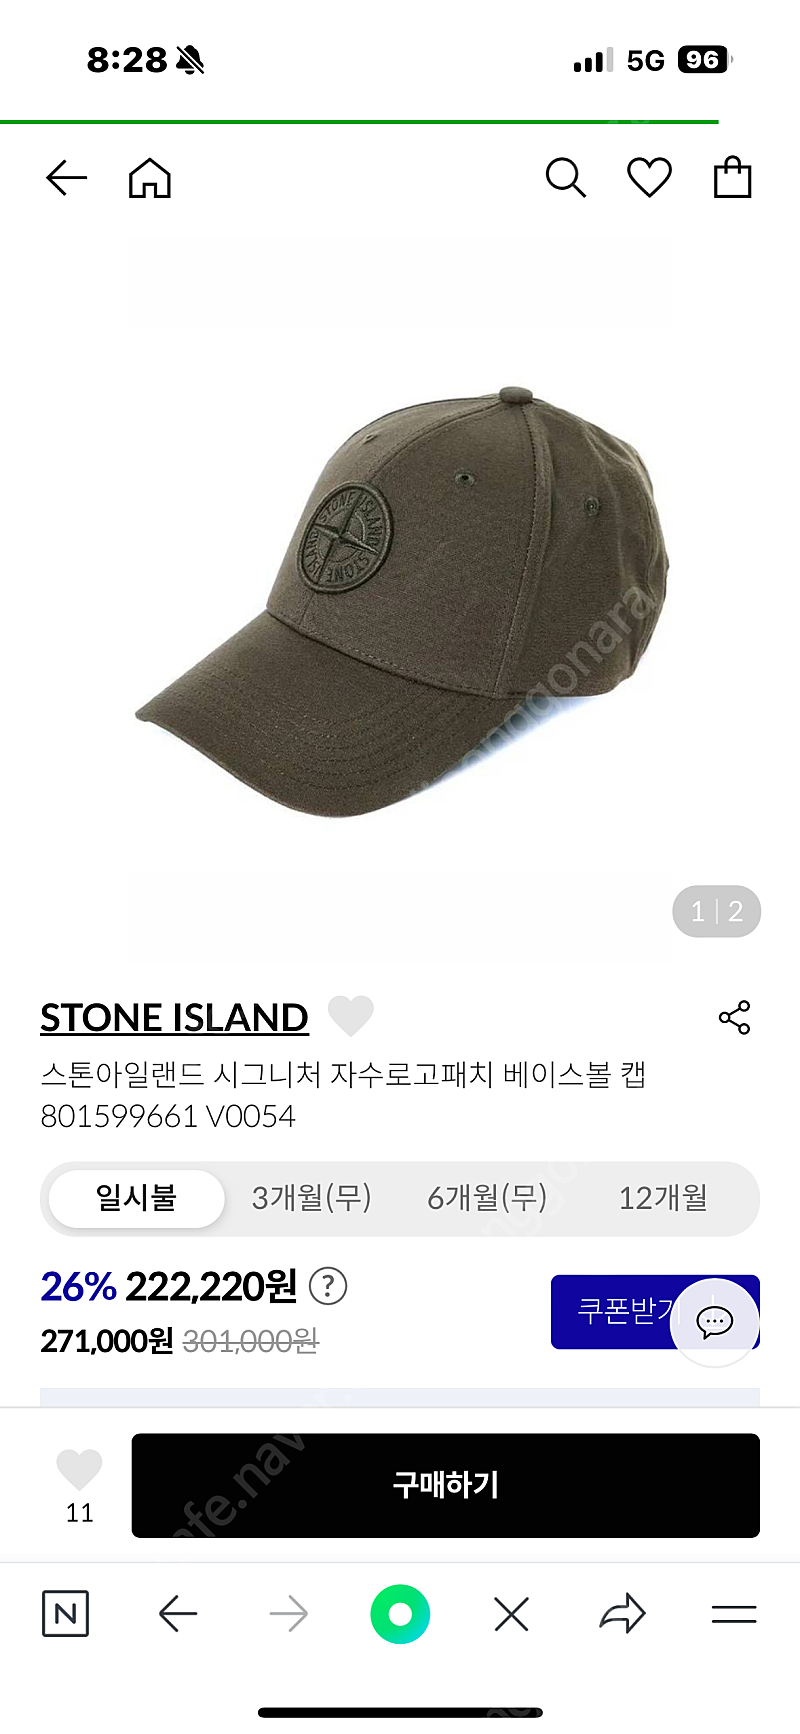 스톤아일랜드 모자 판매합니다.